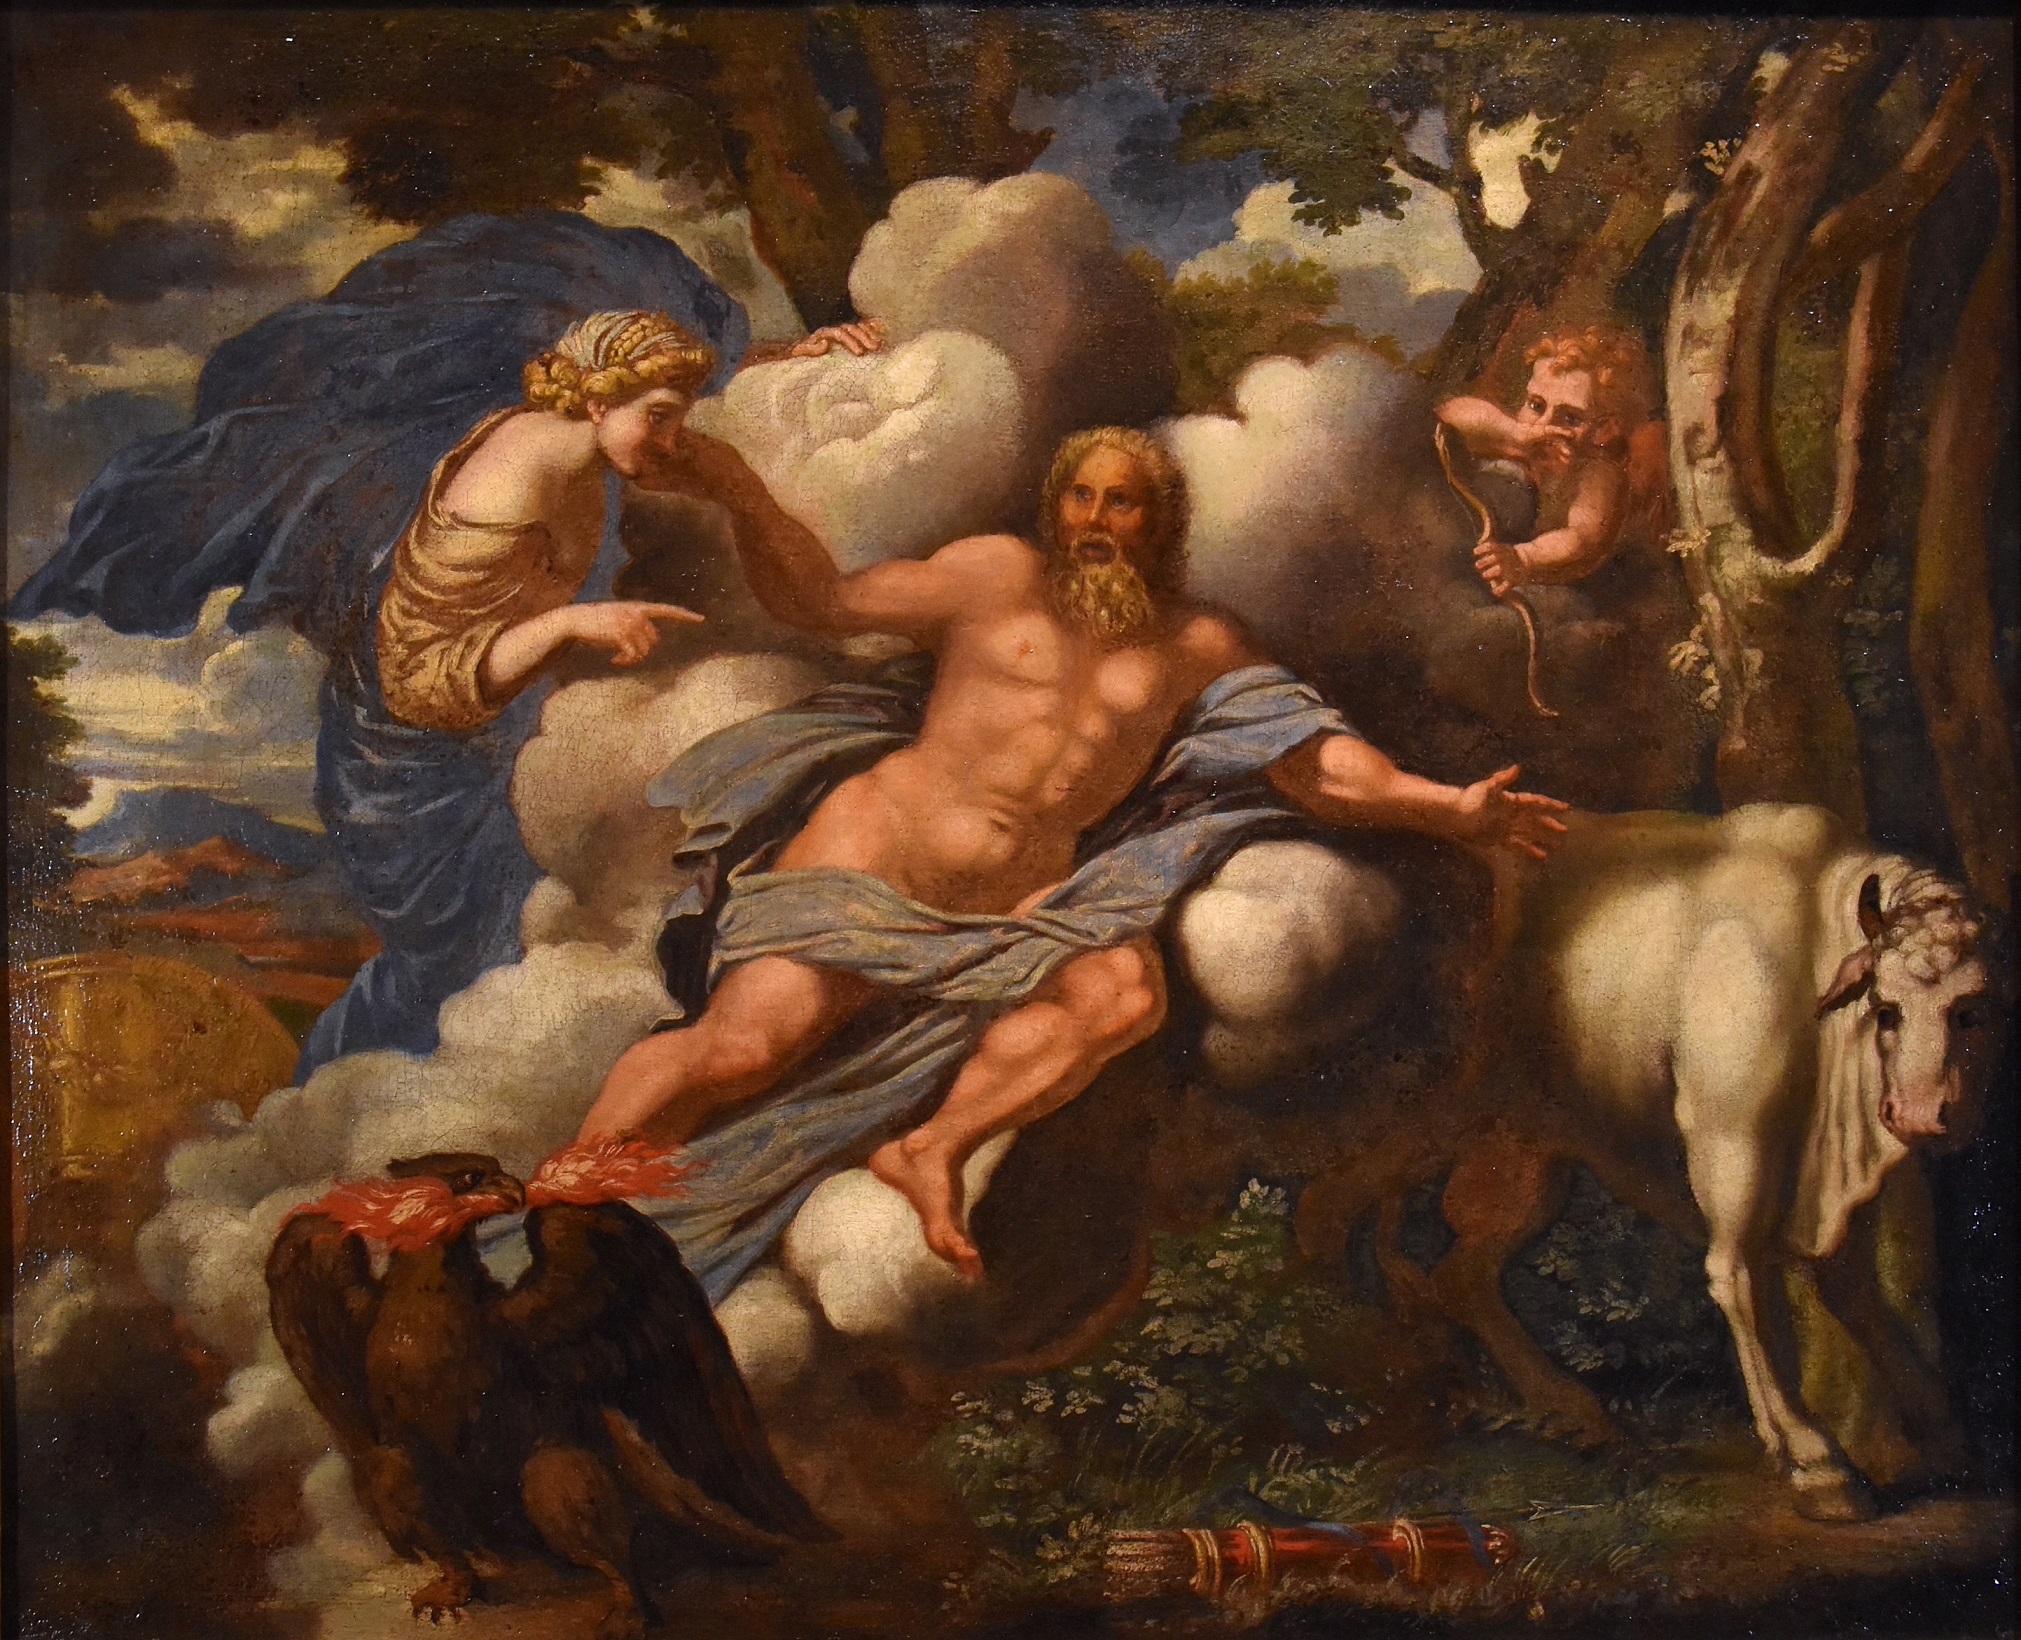 Mythologique Jupiter Canini Peinture Huile sur toile Ancien maître 17ème siècle Italie - Painting de Unknown